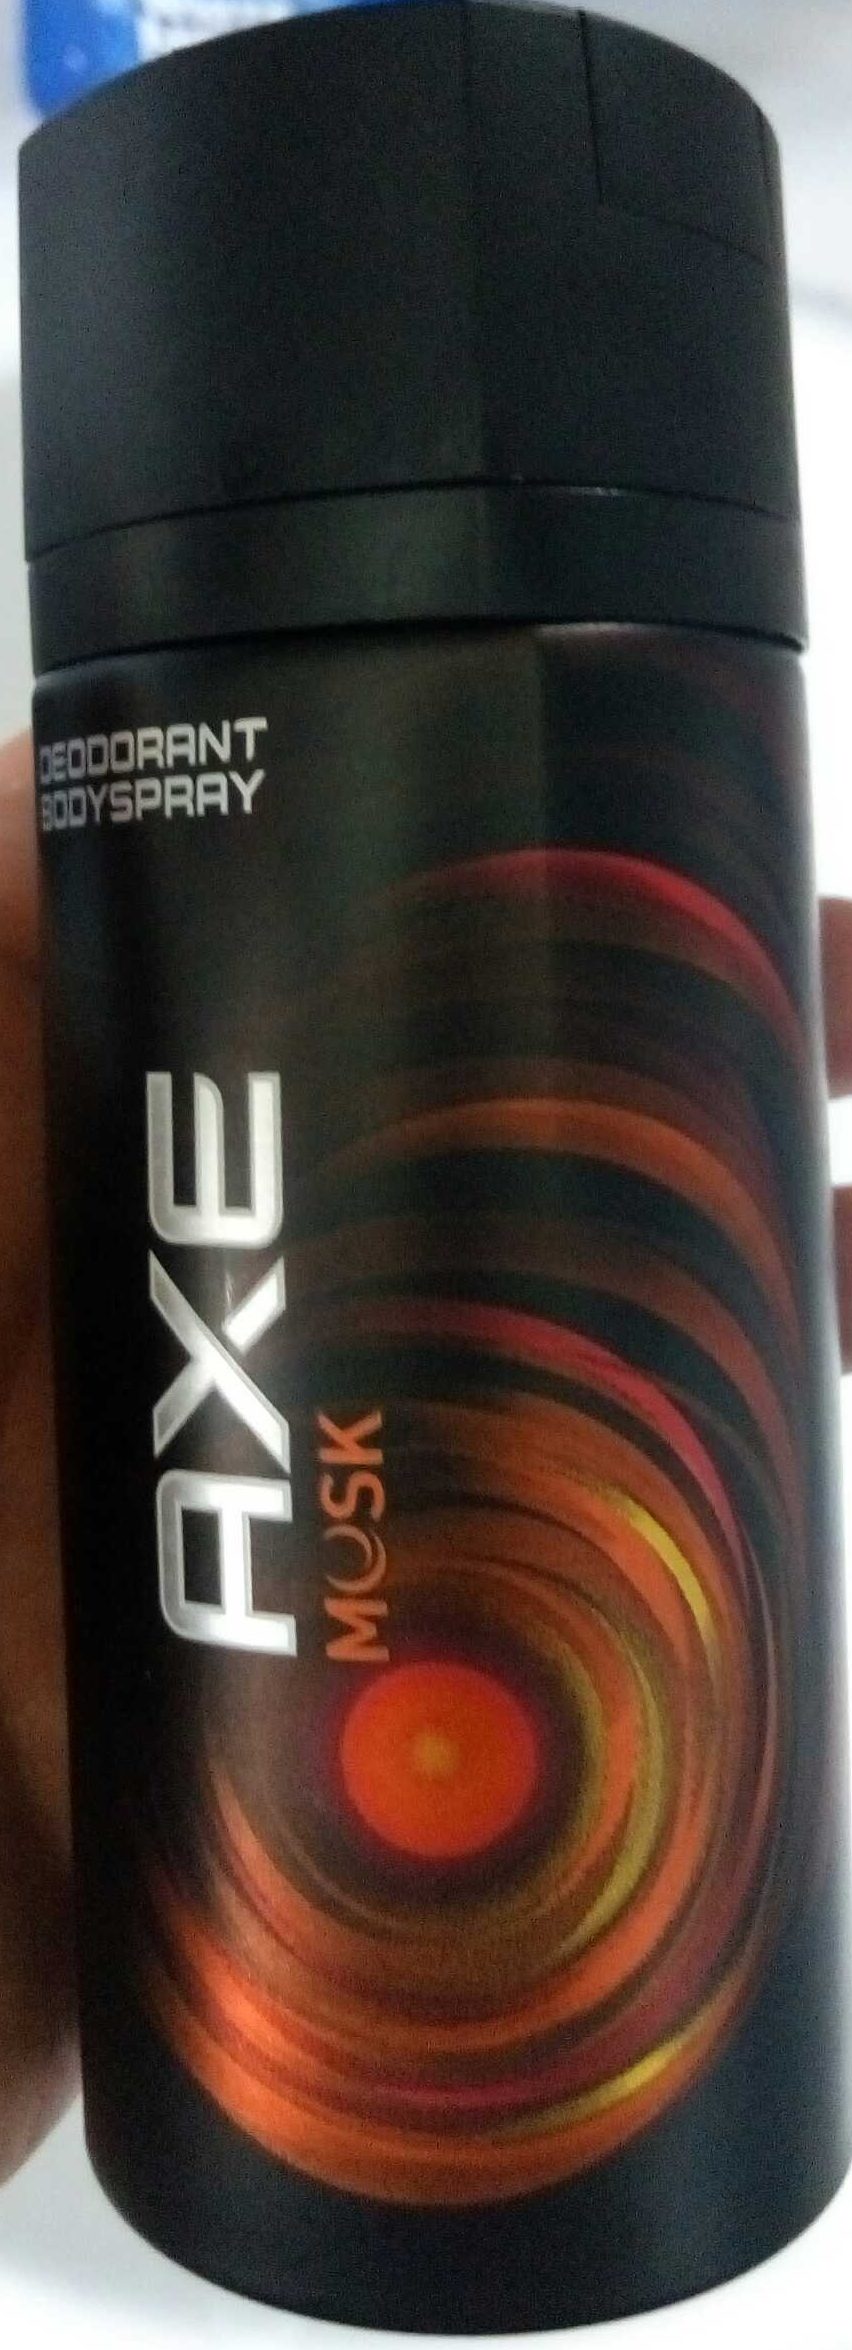 AXE Déodorant Homme Spray Musk Frais 48h - Product - fr